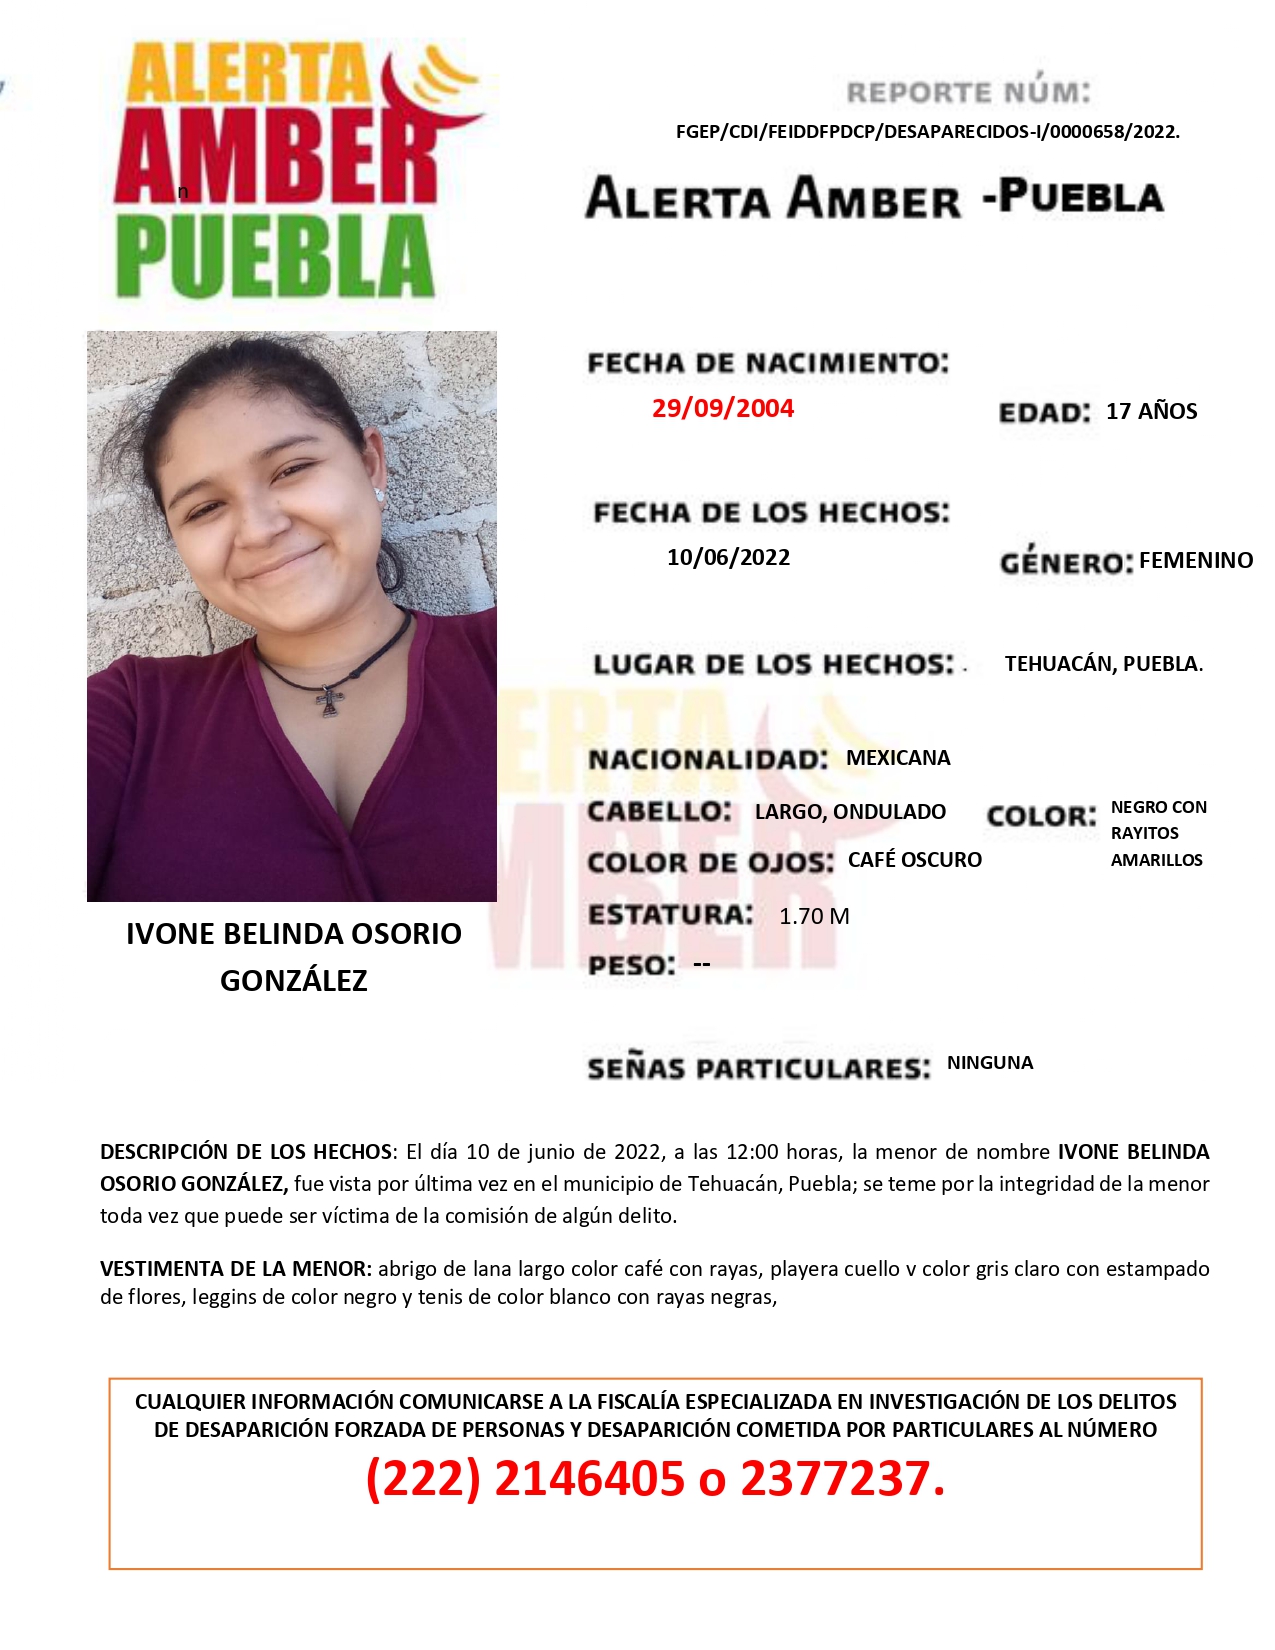 Fiscalía Puebla activa la Alerta AMBER de la menor IVONE BELINDA OSORIO GONZÁLEZ